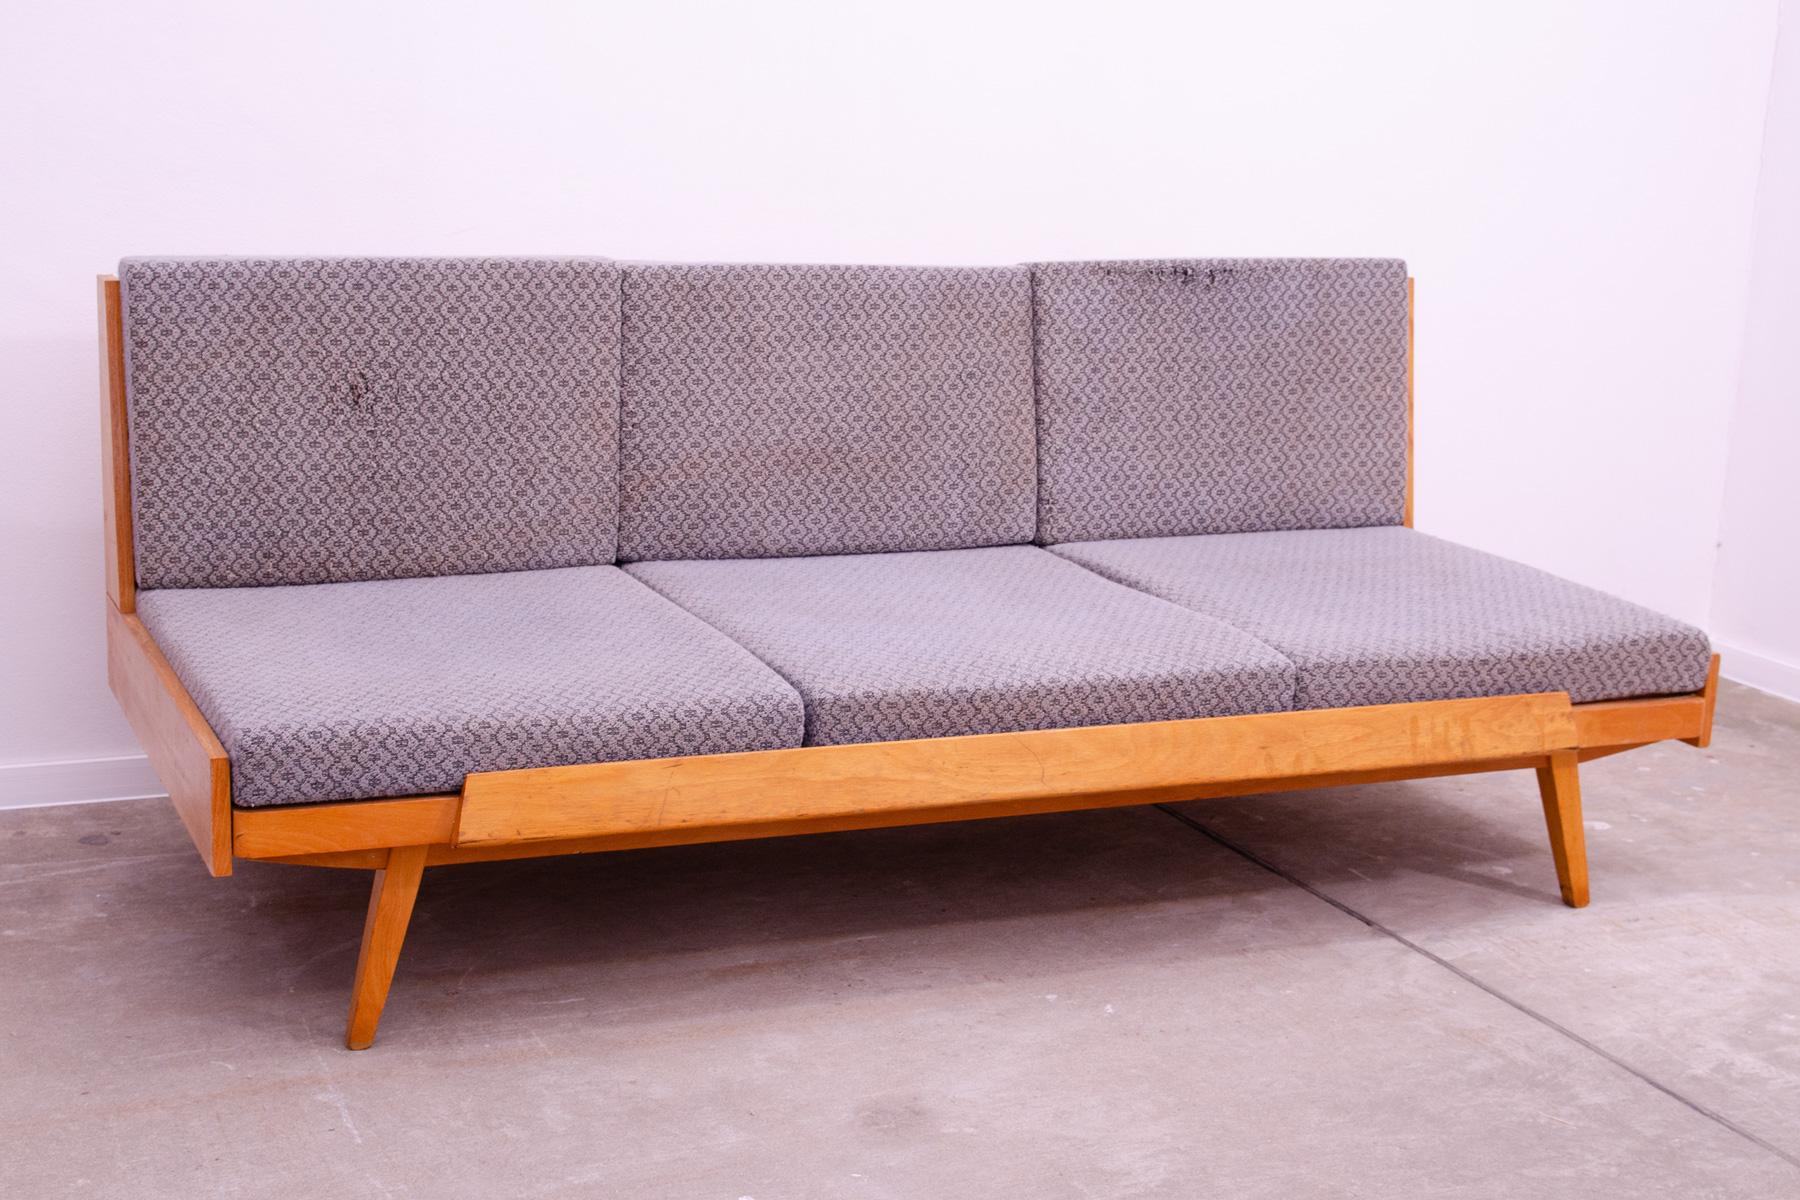 Schlafsofa aus der Mitte des Jahrhunderts, hergestellt in der ehemaligen Tschechoslowakei in den 1970er Jahren. Das Sofa ist aus Buchenholz gefertigt, es ist in gutem Zustand, der Stoff weist deutliche Alters- und Gebrauchsspuren auf und muss neu